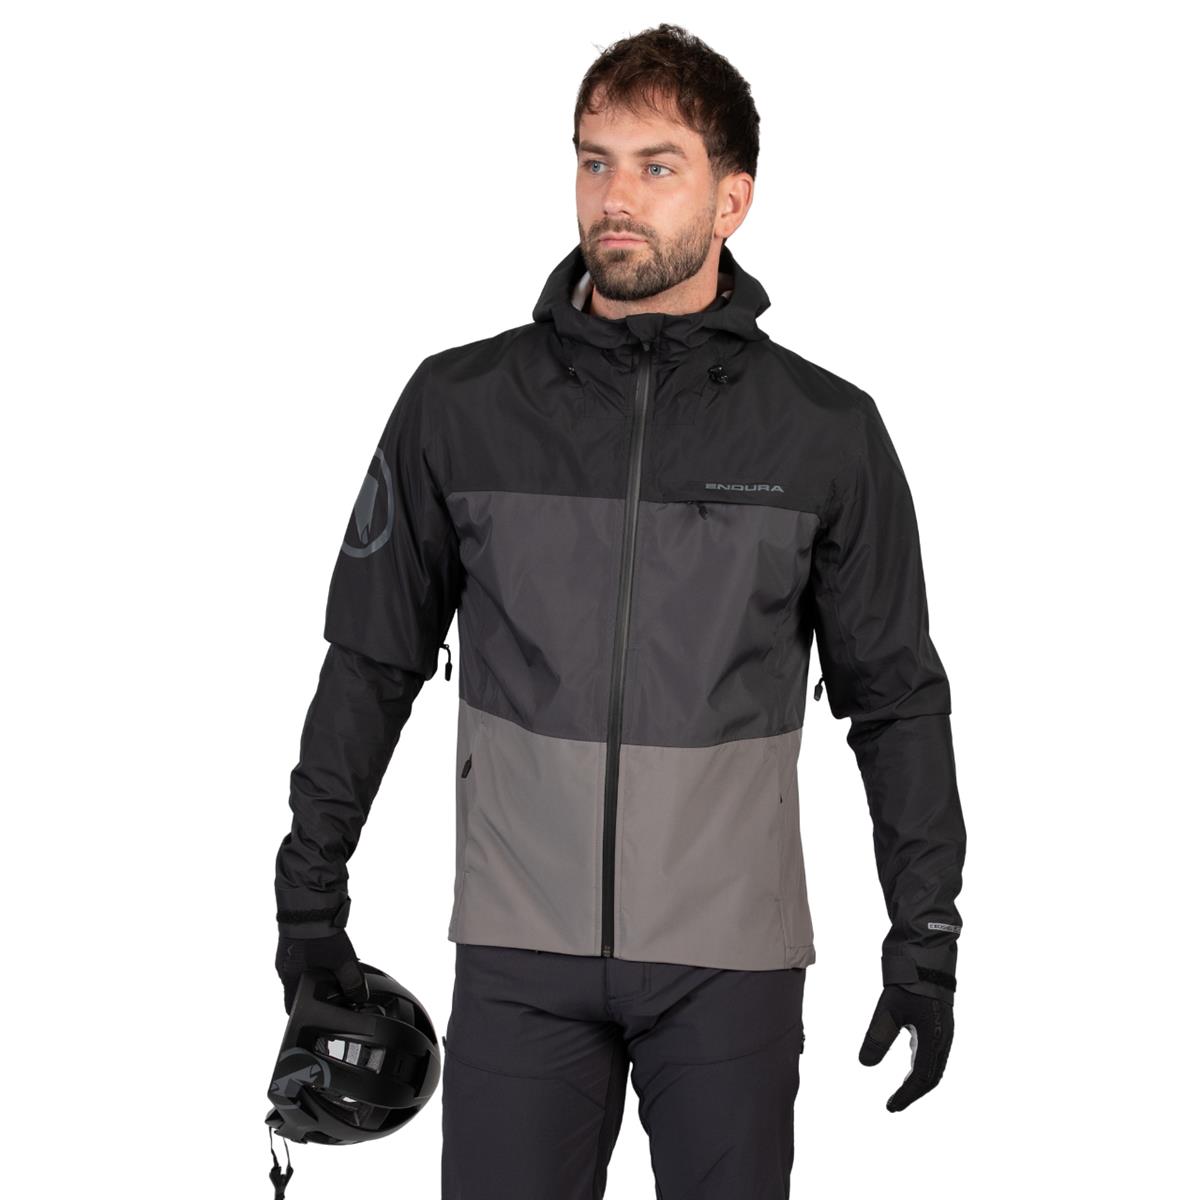 SingleTrack Jacket II Waterproof MTB Jacket Black Size XL